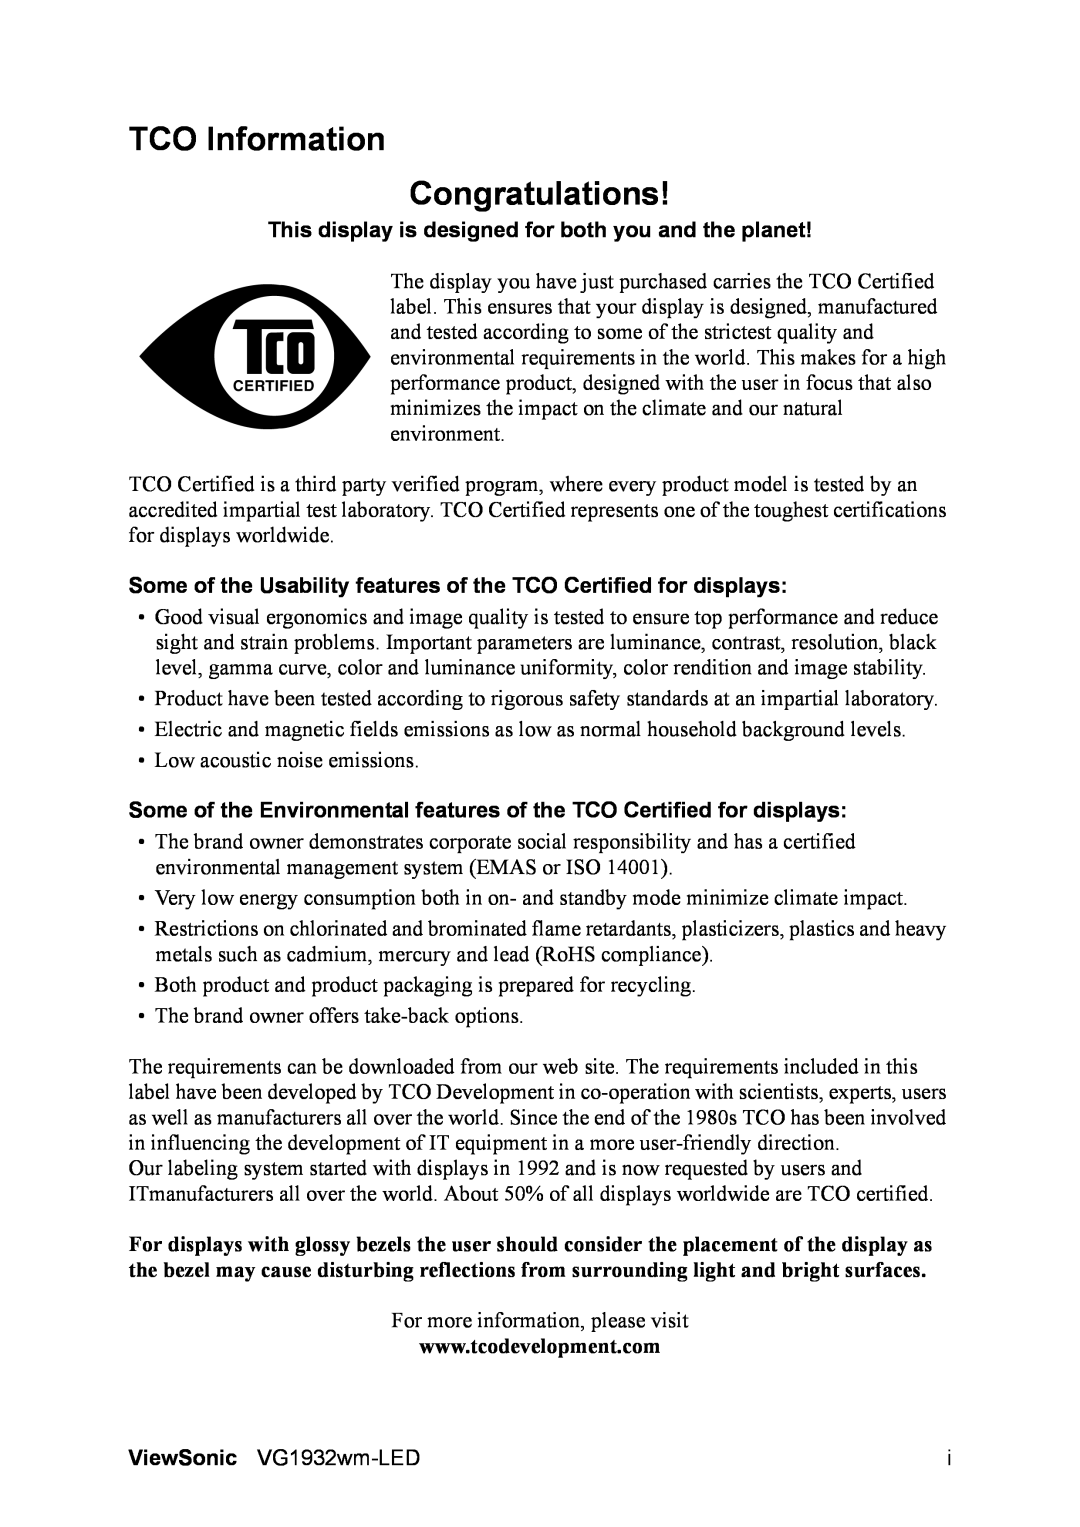 ViewSonic VS12939 warranty TCO Information Congratulations 